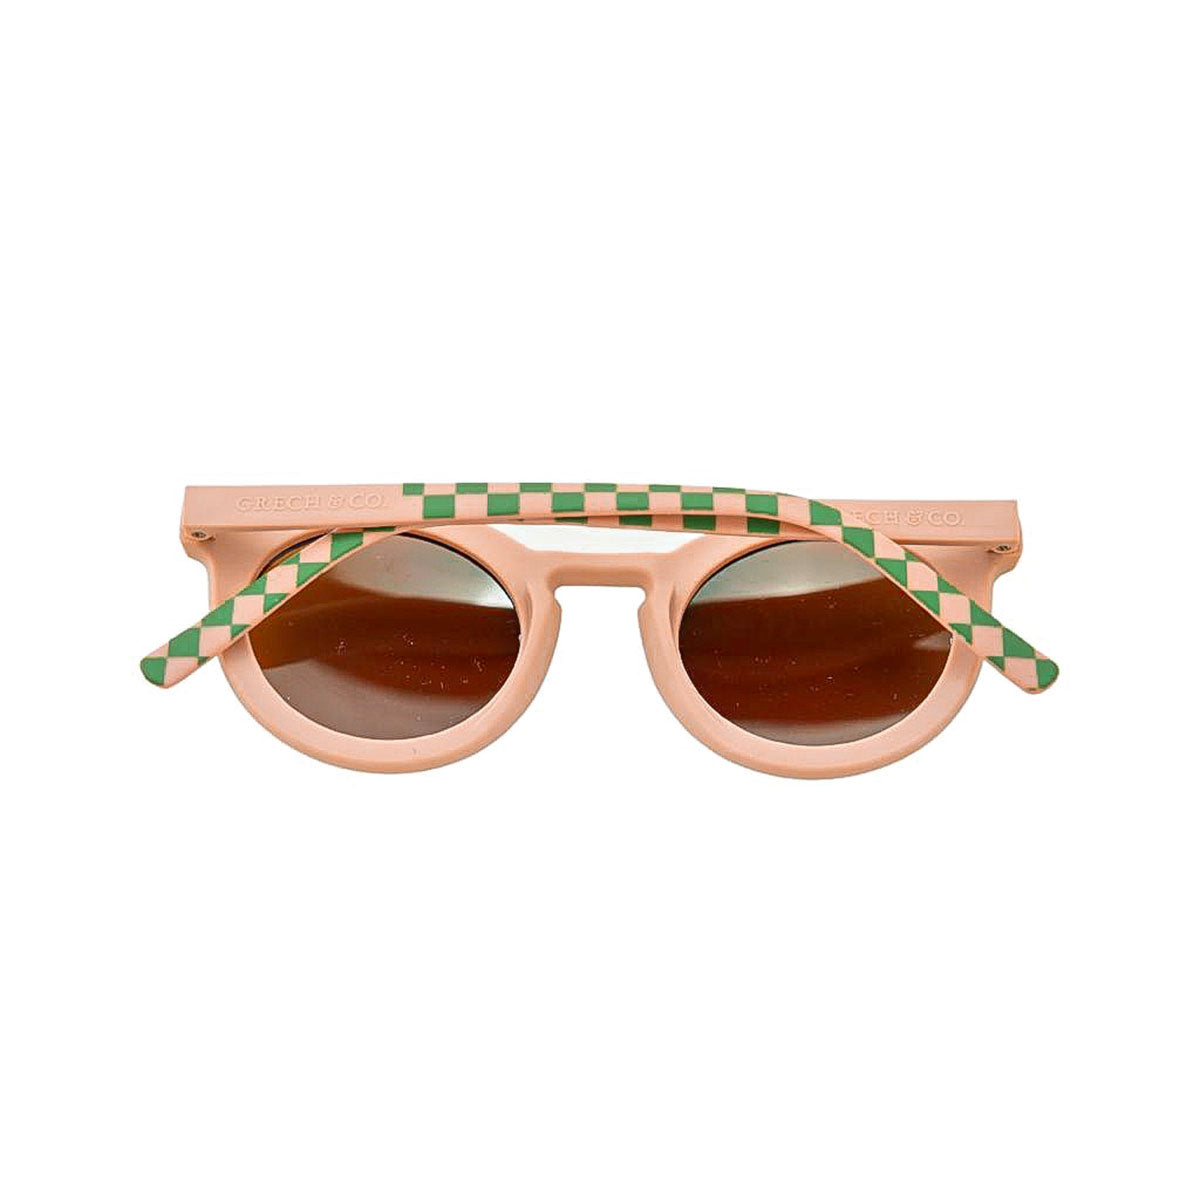 De Grech & co. zonnebril classic buigbaar kids in de kleur checks sunset + orchard is speciaal ontworpen voor kindjes die willen matchen met hun mama. De zonnebril is namelijk ook beschikbaar voor moeders en baby’s! VanZus